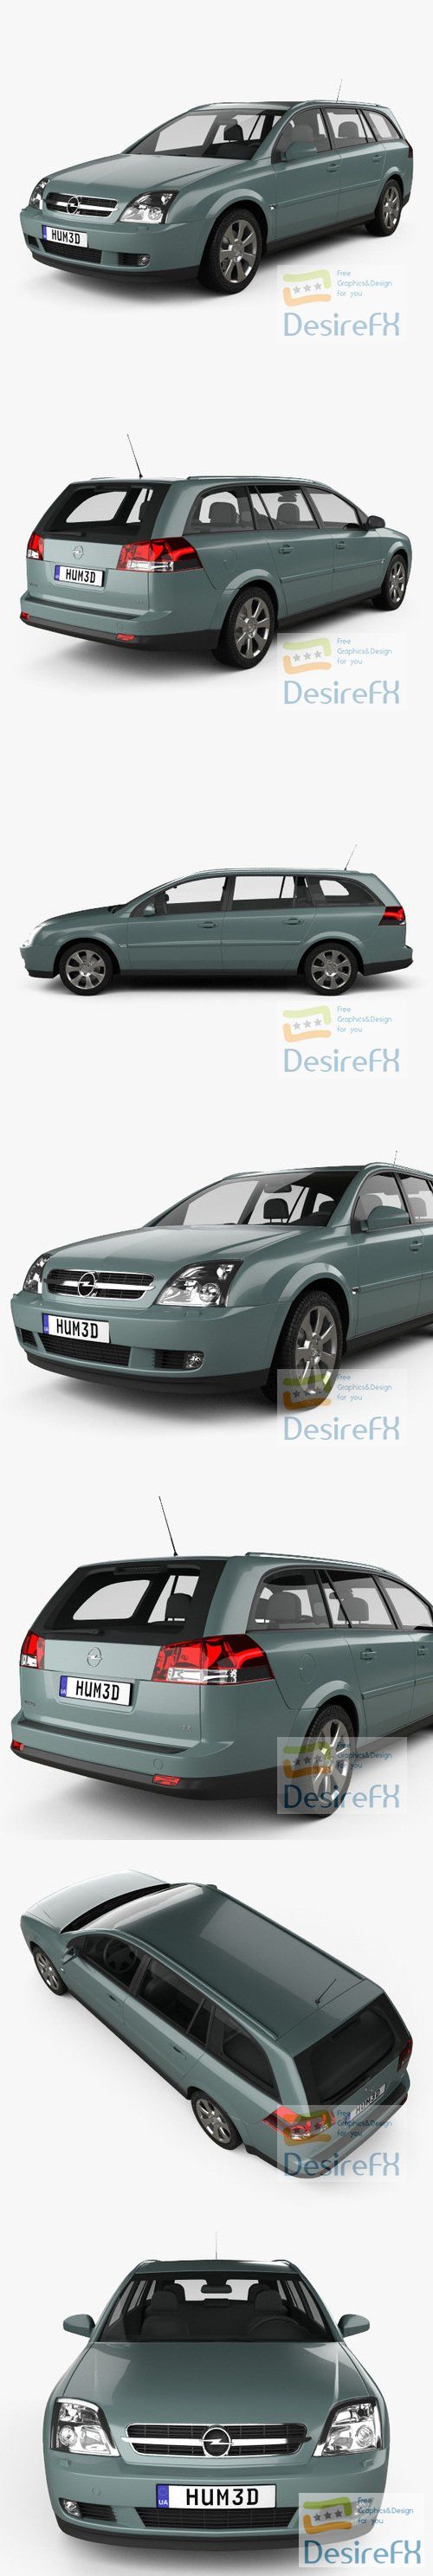 Opel Vectra caravan 2002 3D Model